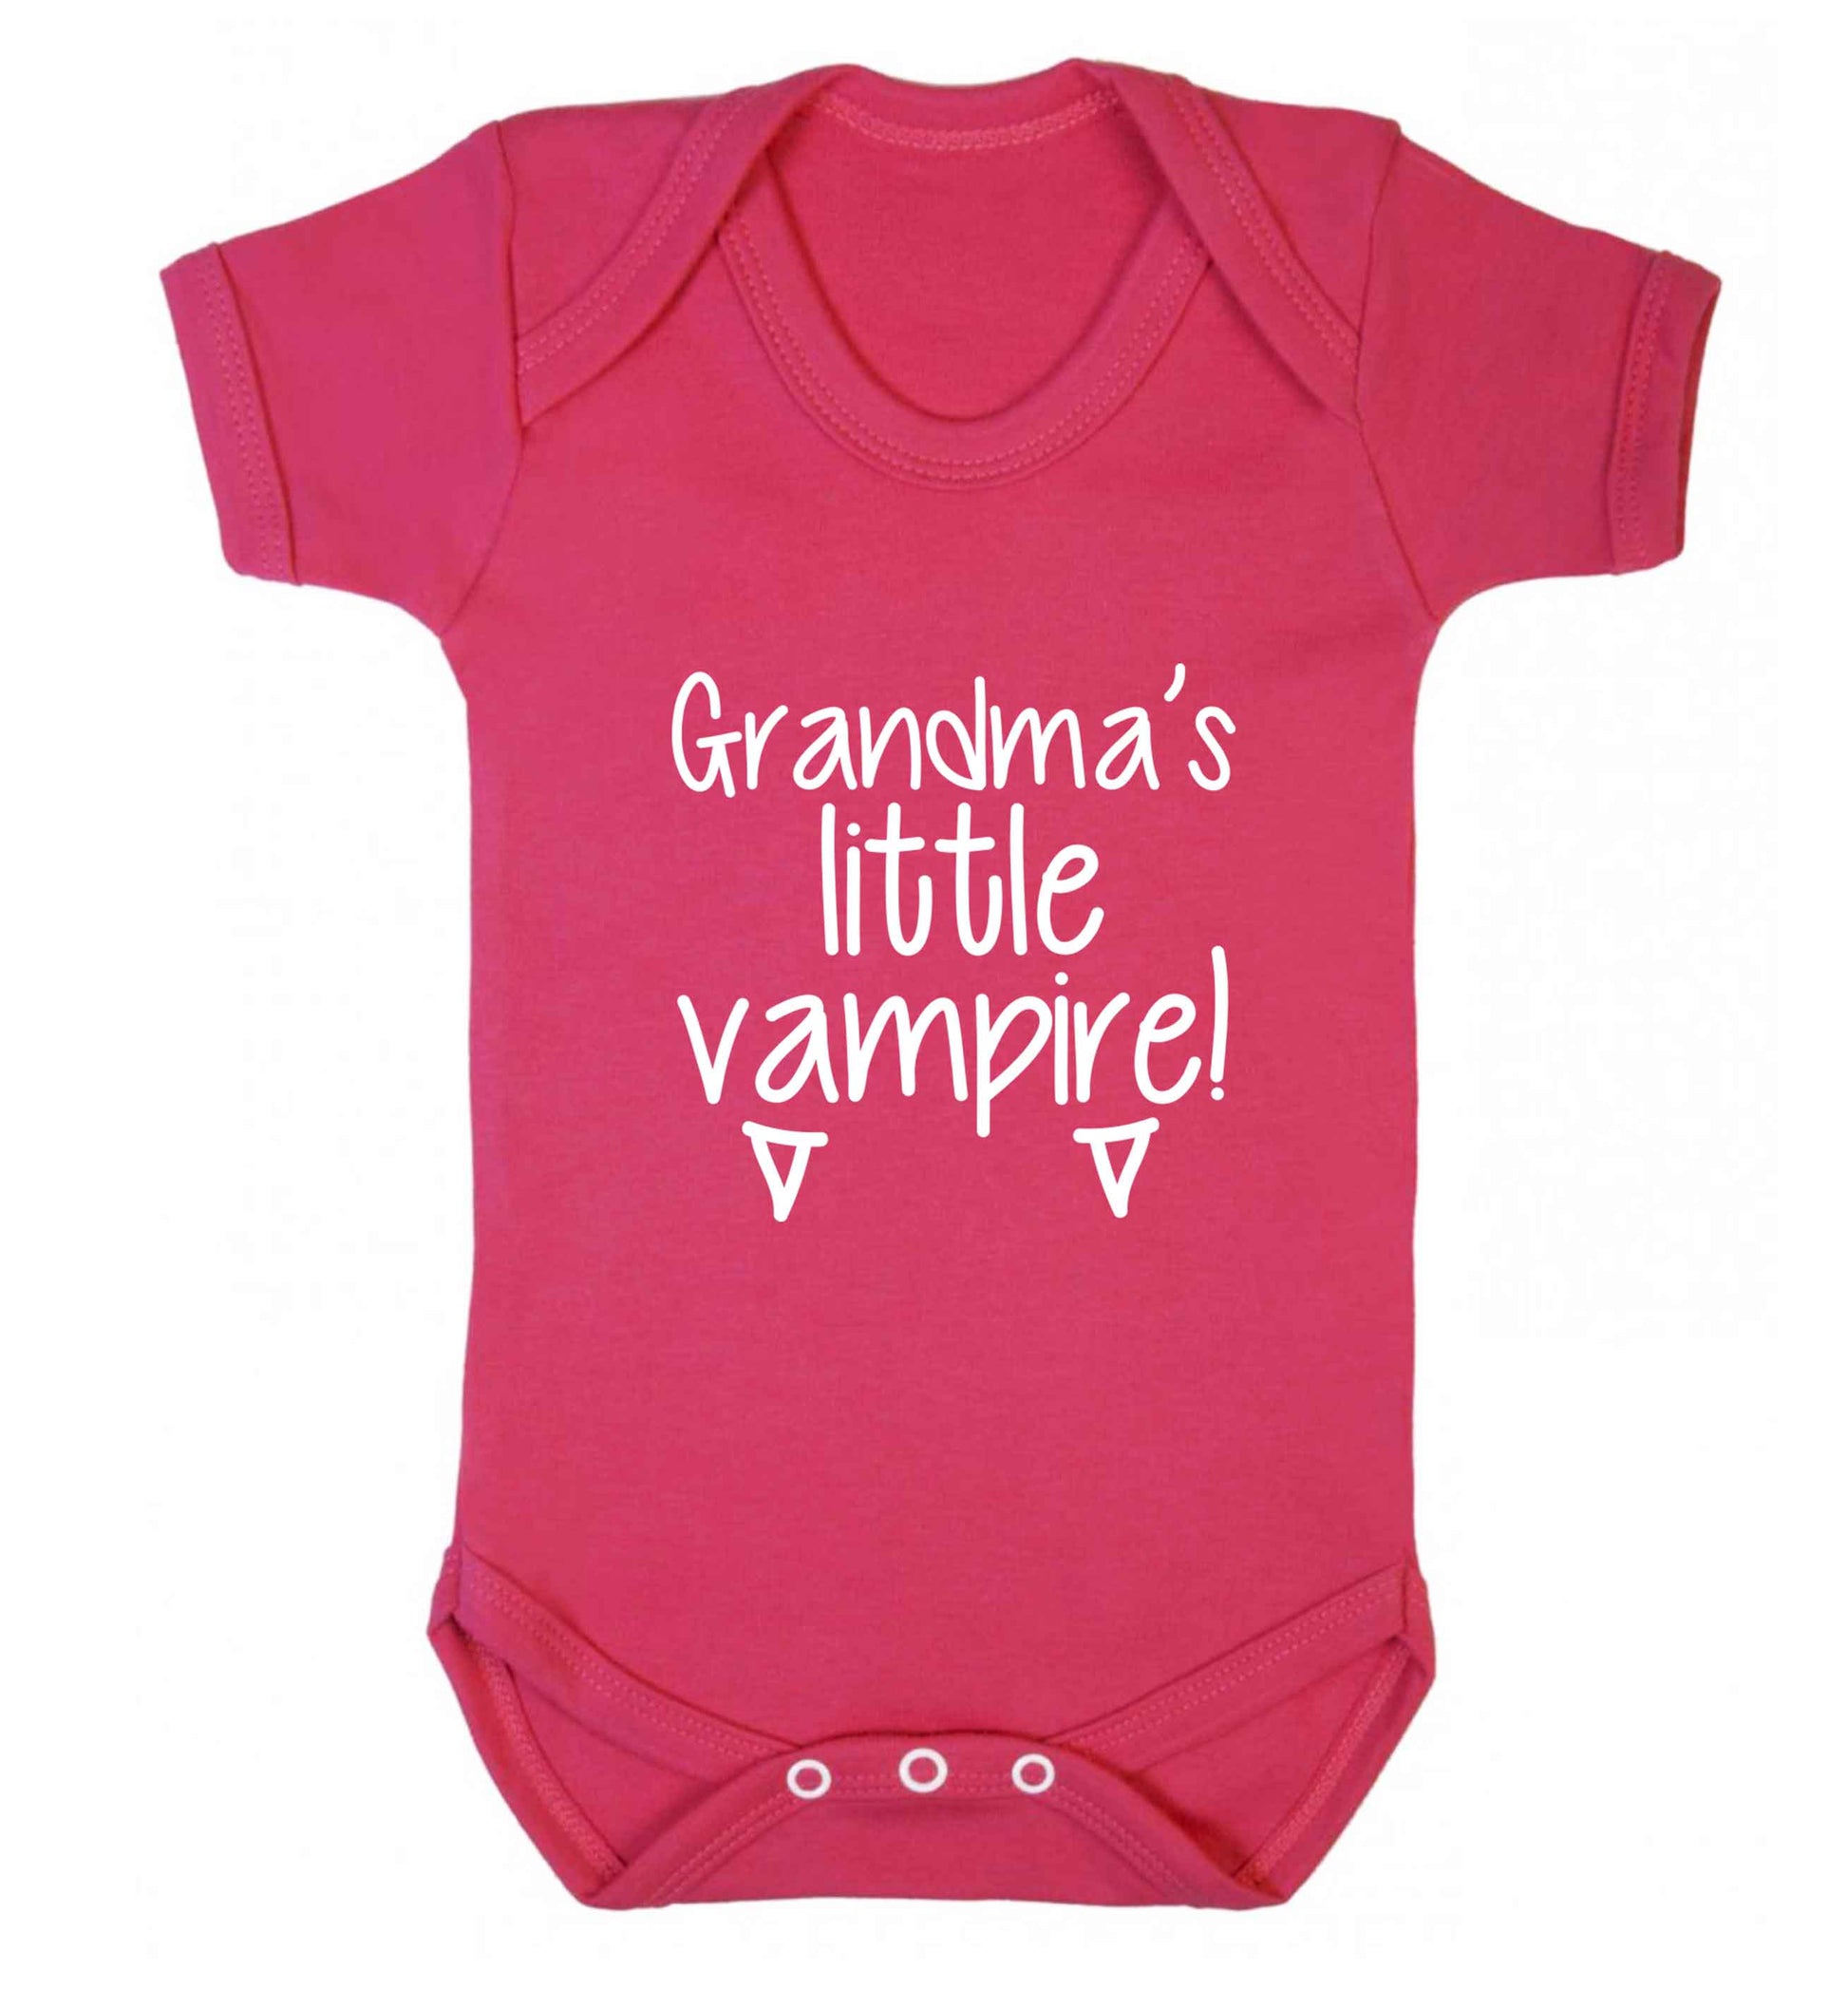 Grandma's little vampire baby vest dark pink 18-24 months